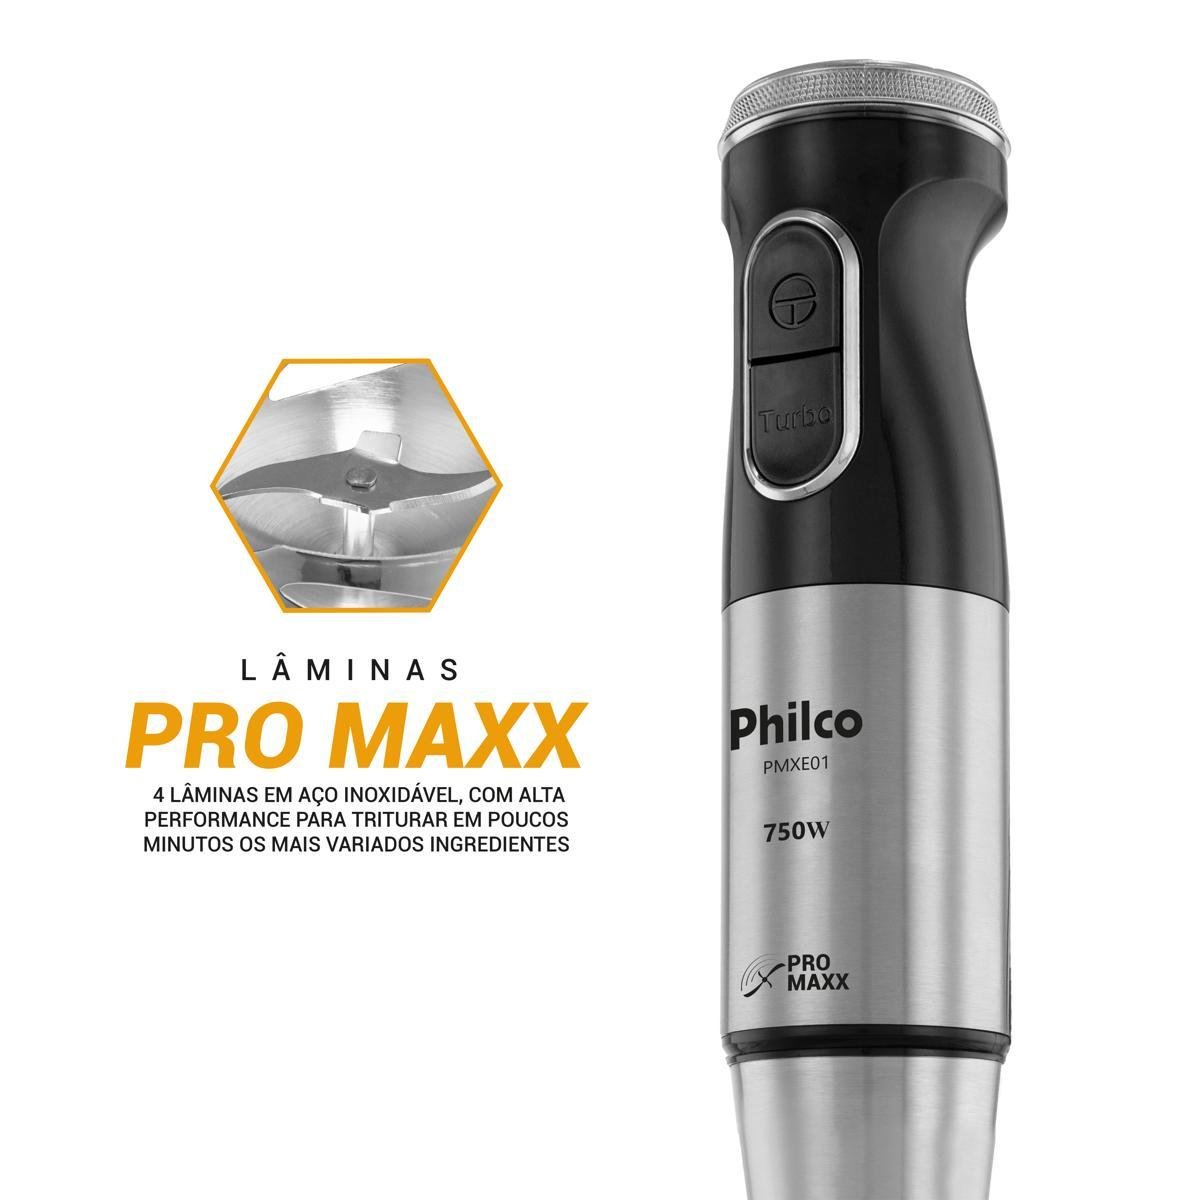 Mixer Philco Pmxe01 Inox com Copo 750w 220v - 4